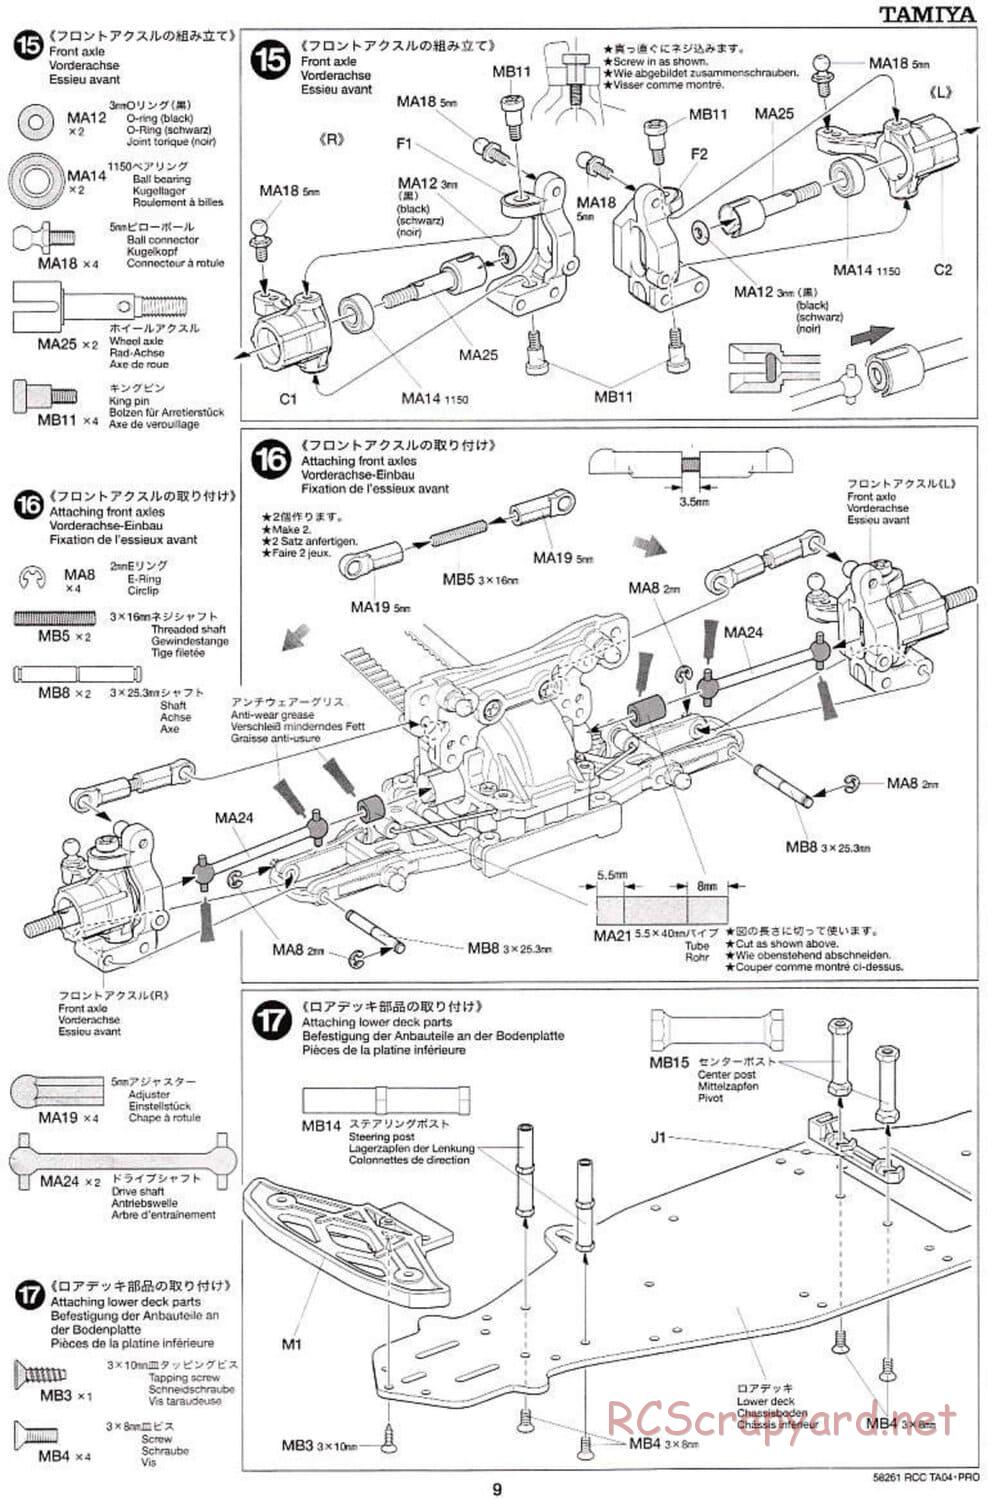 Tamiya - TA-04 Pro Chassis - Manual - Page 9